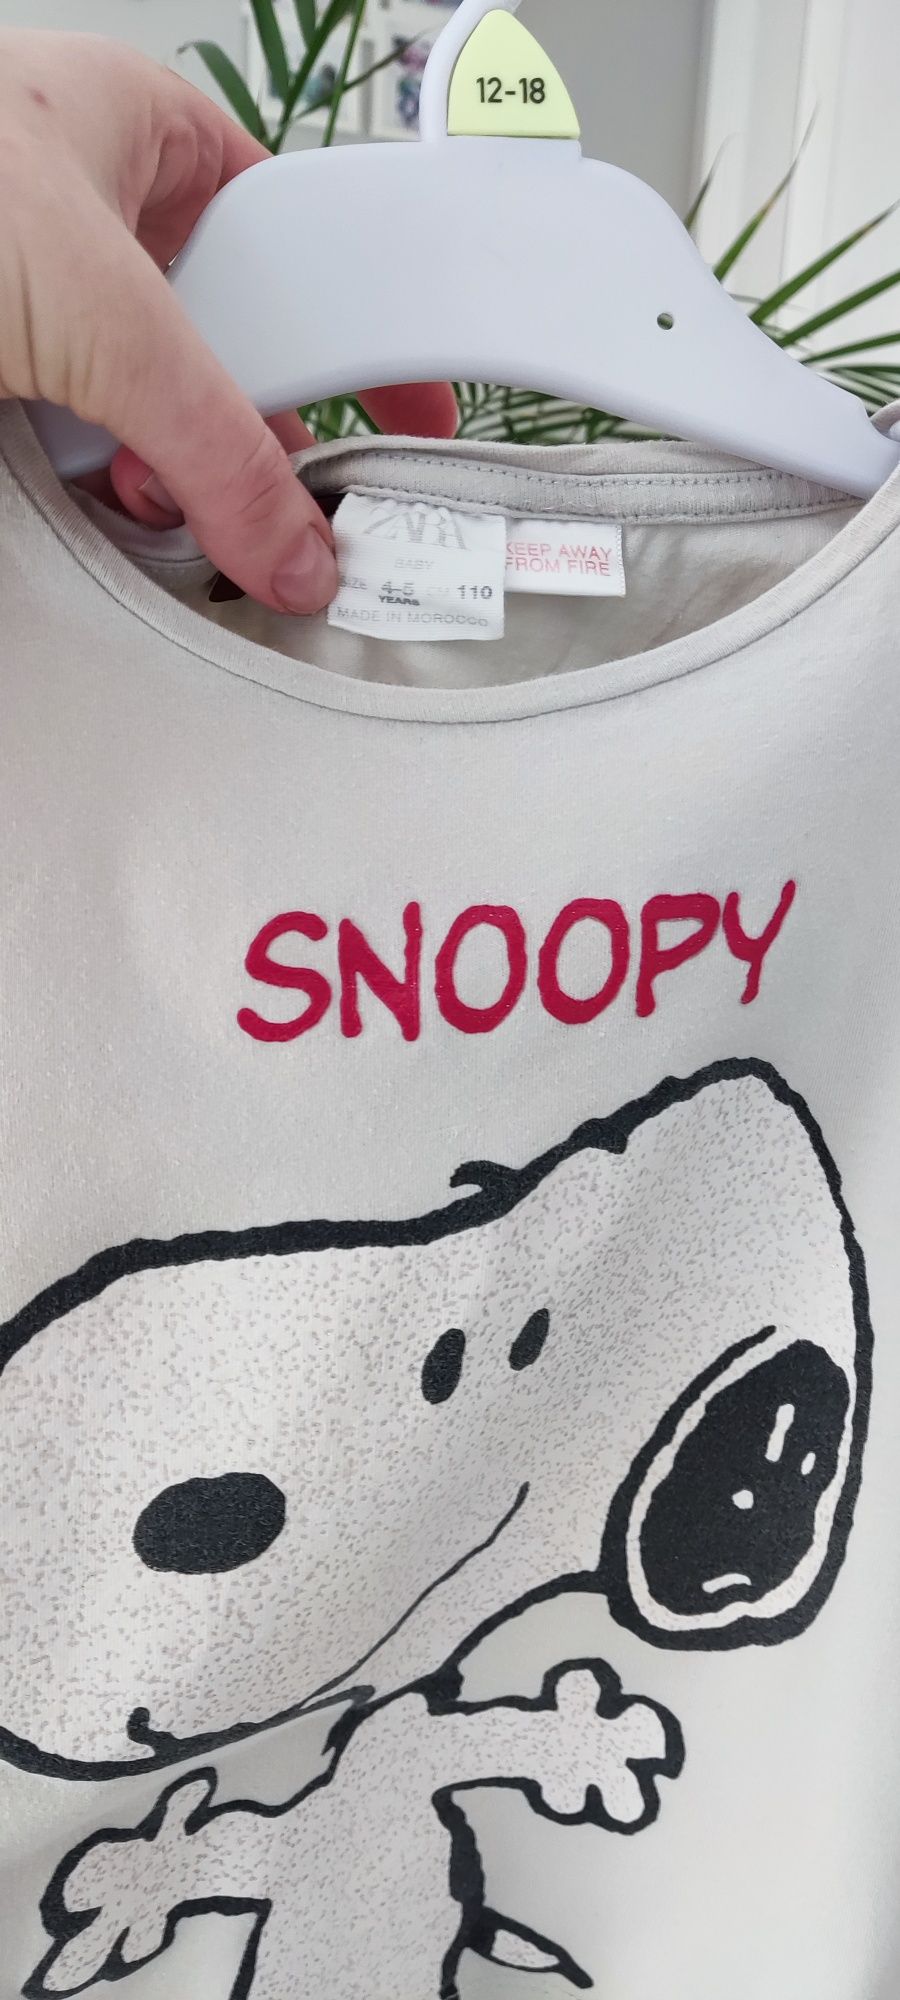 Bluzeczka Zara, Snoopy, rozmiar 110 (4-5 lat).